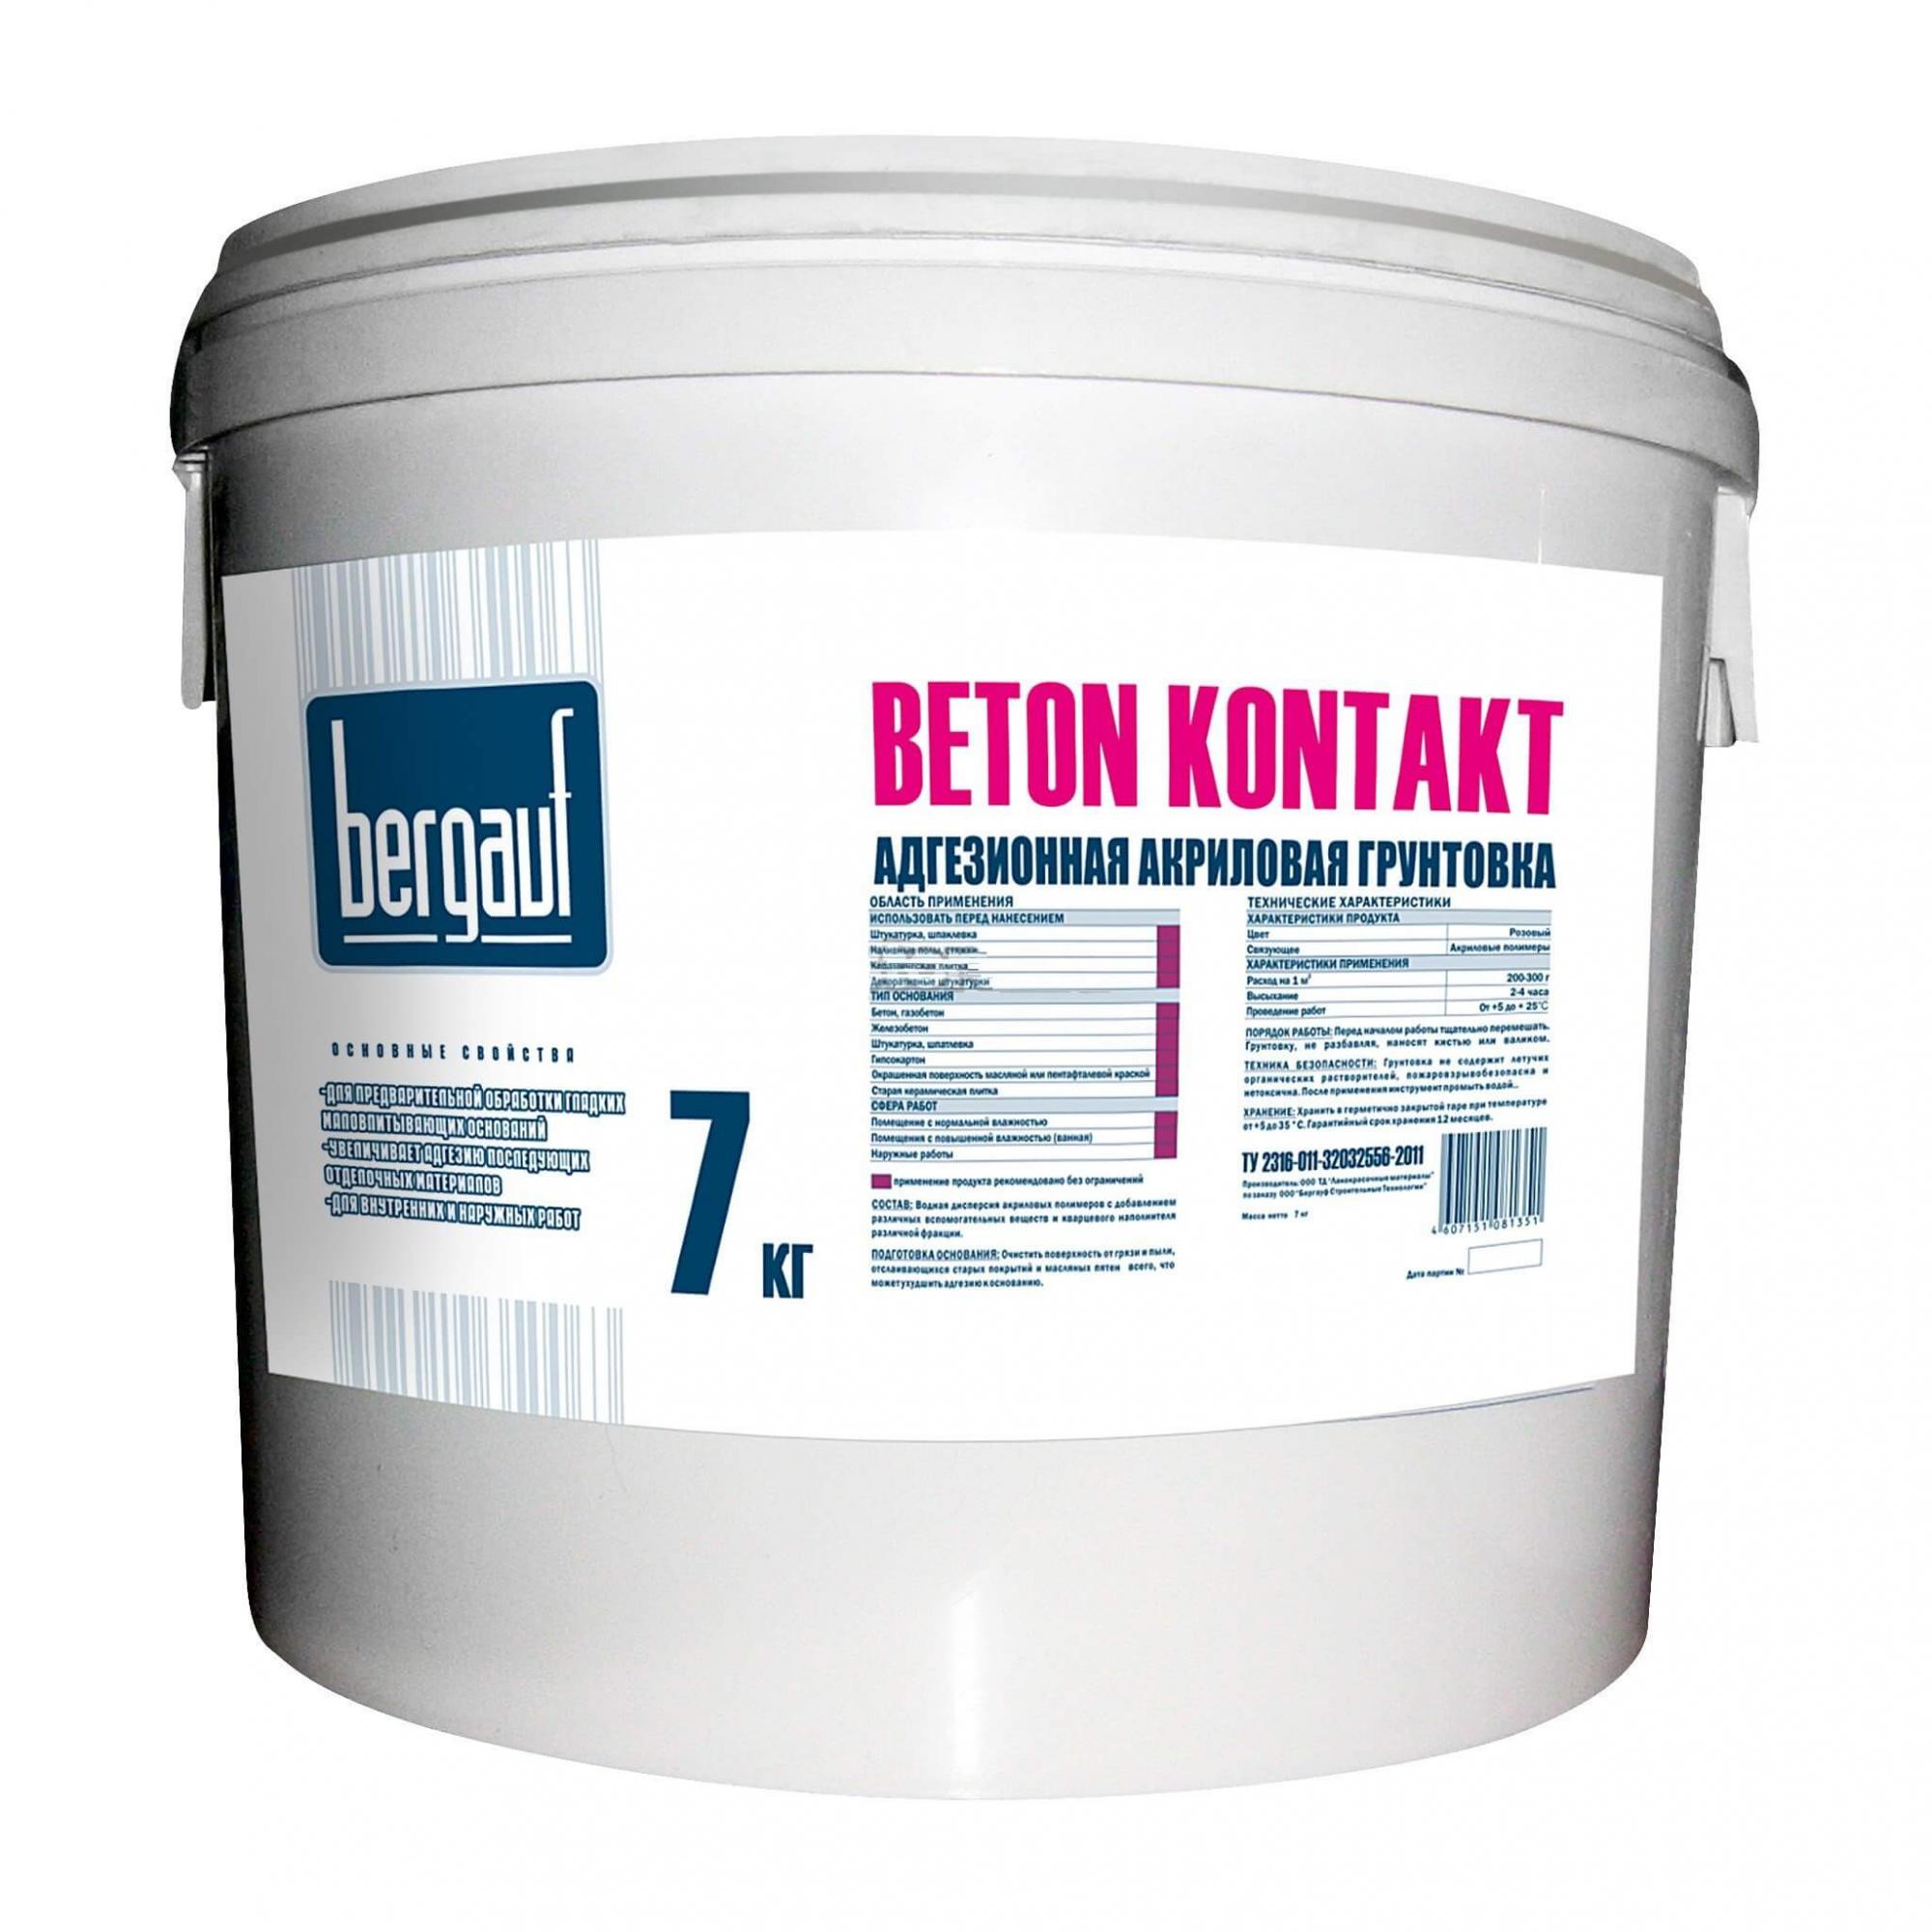 Купить Акриловая грунтовка Beton Kontakt, 7 кг РФ, морозостойкая в .